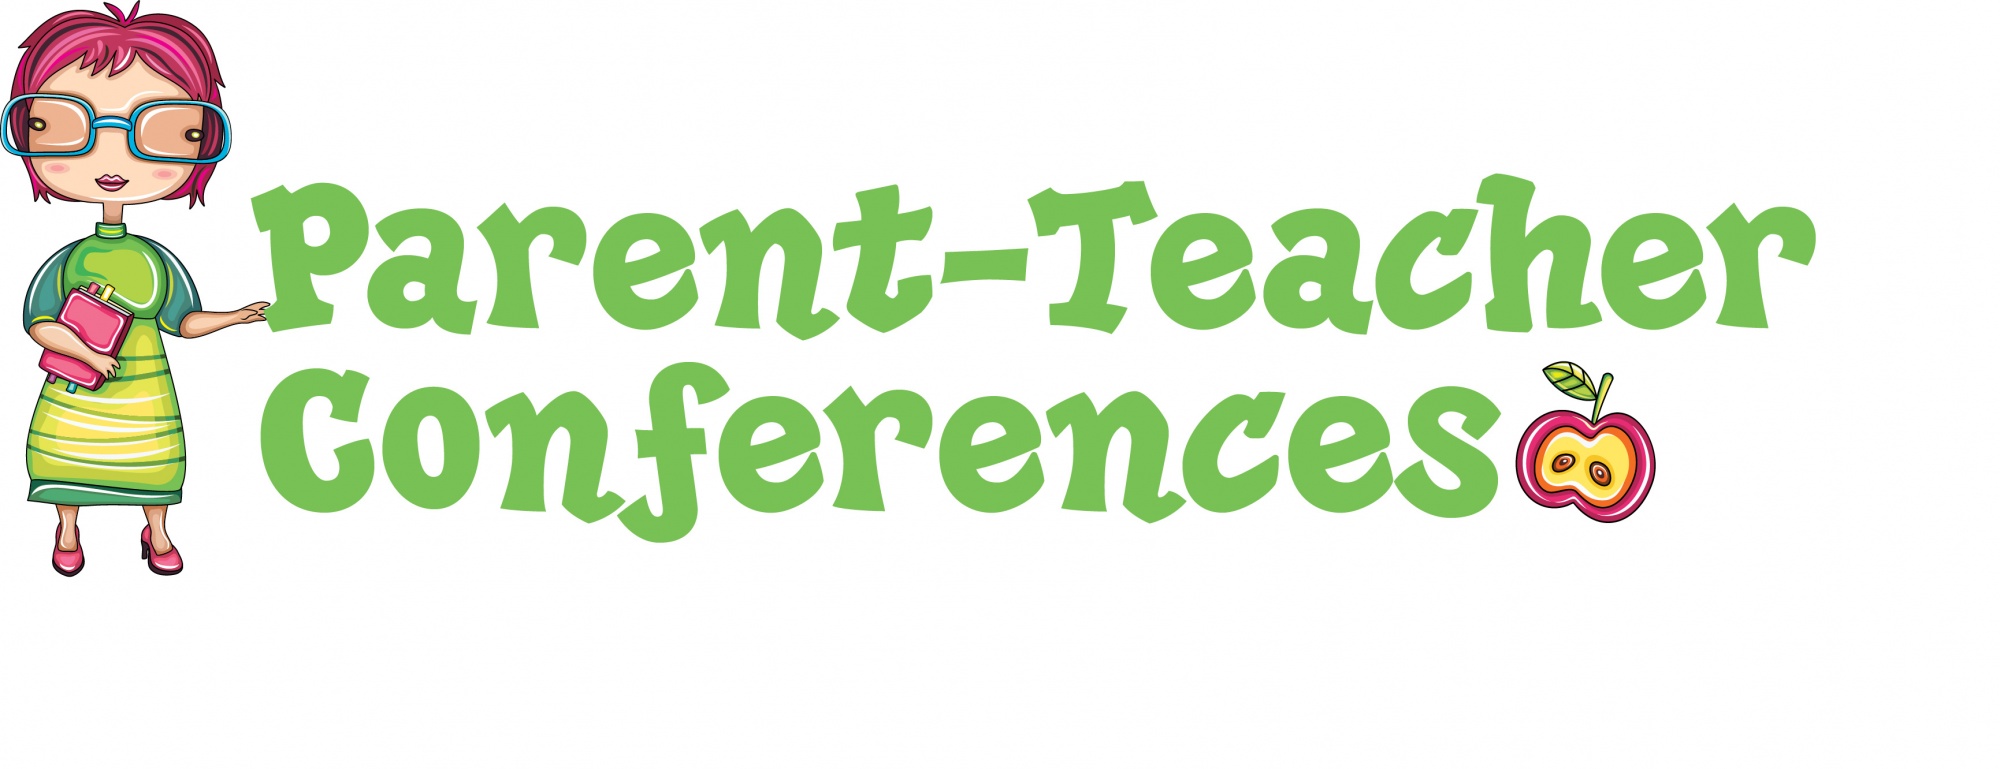 Student Conference Clipart Cl - Parent Teacher Conference Clipart